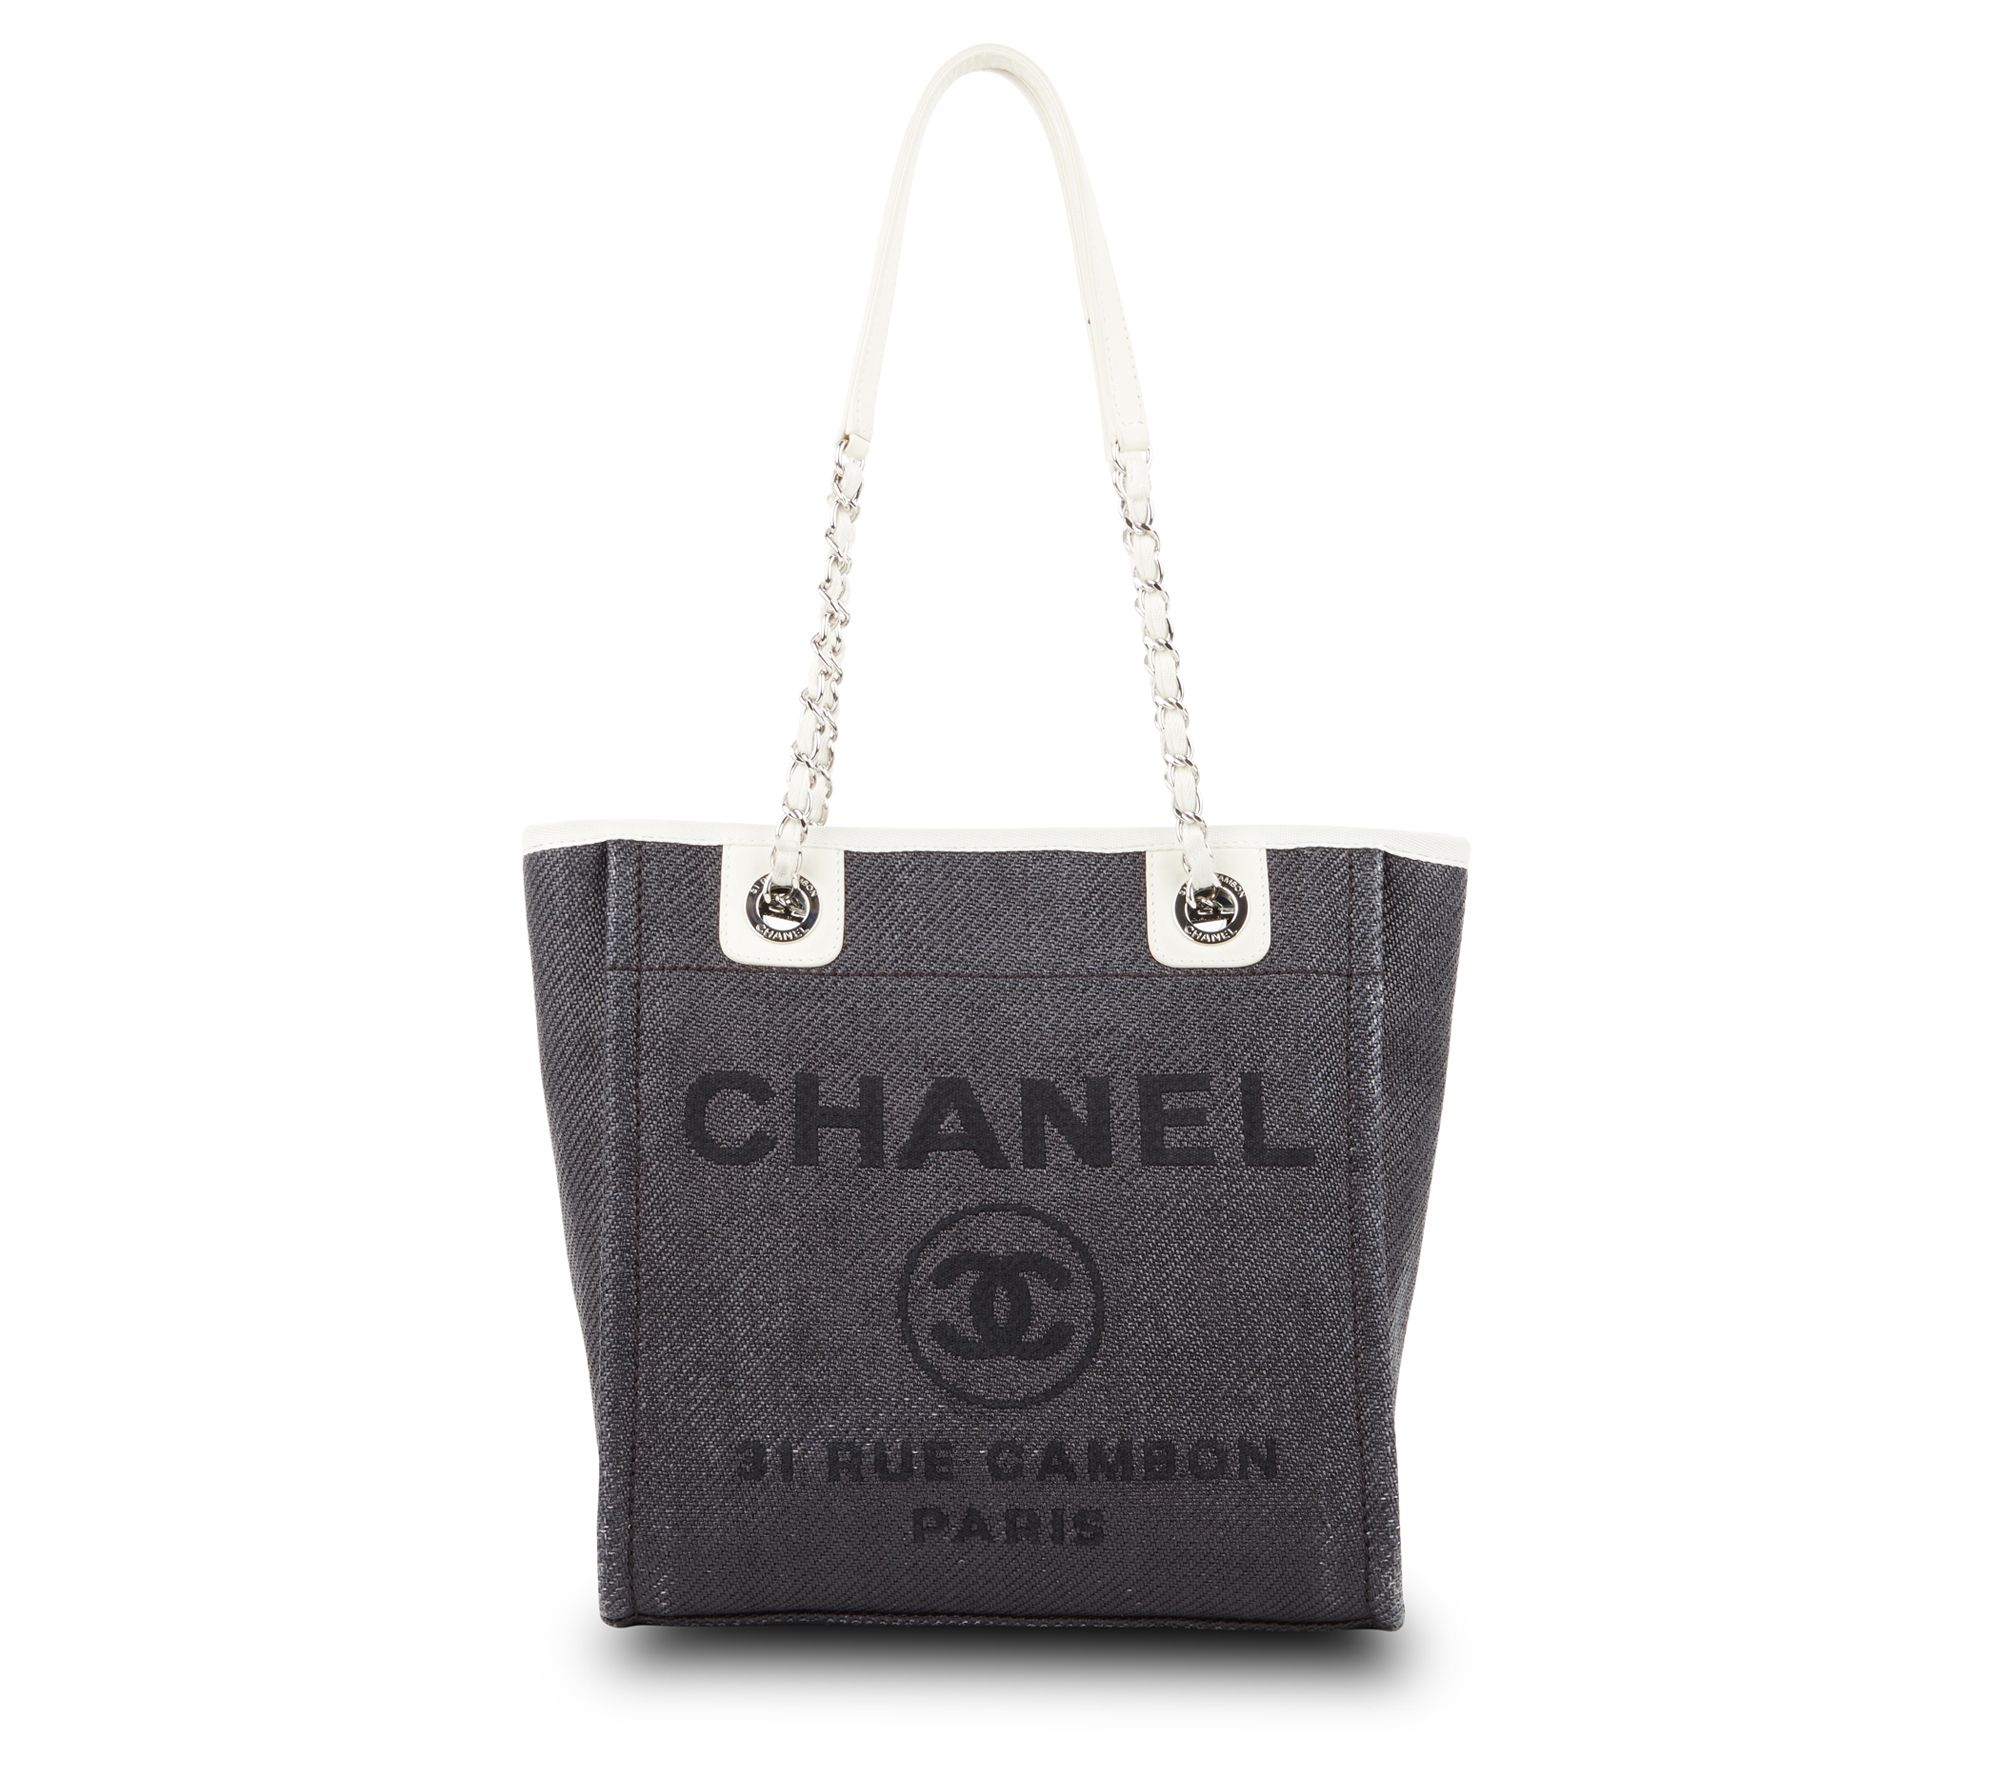 CHANEL Mini Deauville Shopper Bag - A Retro Tale